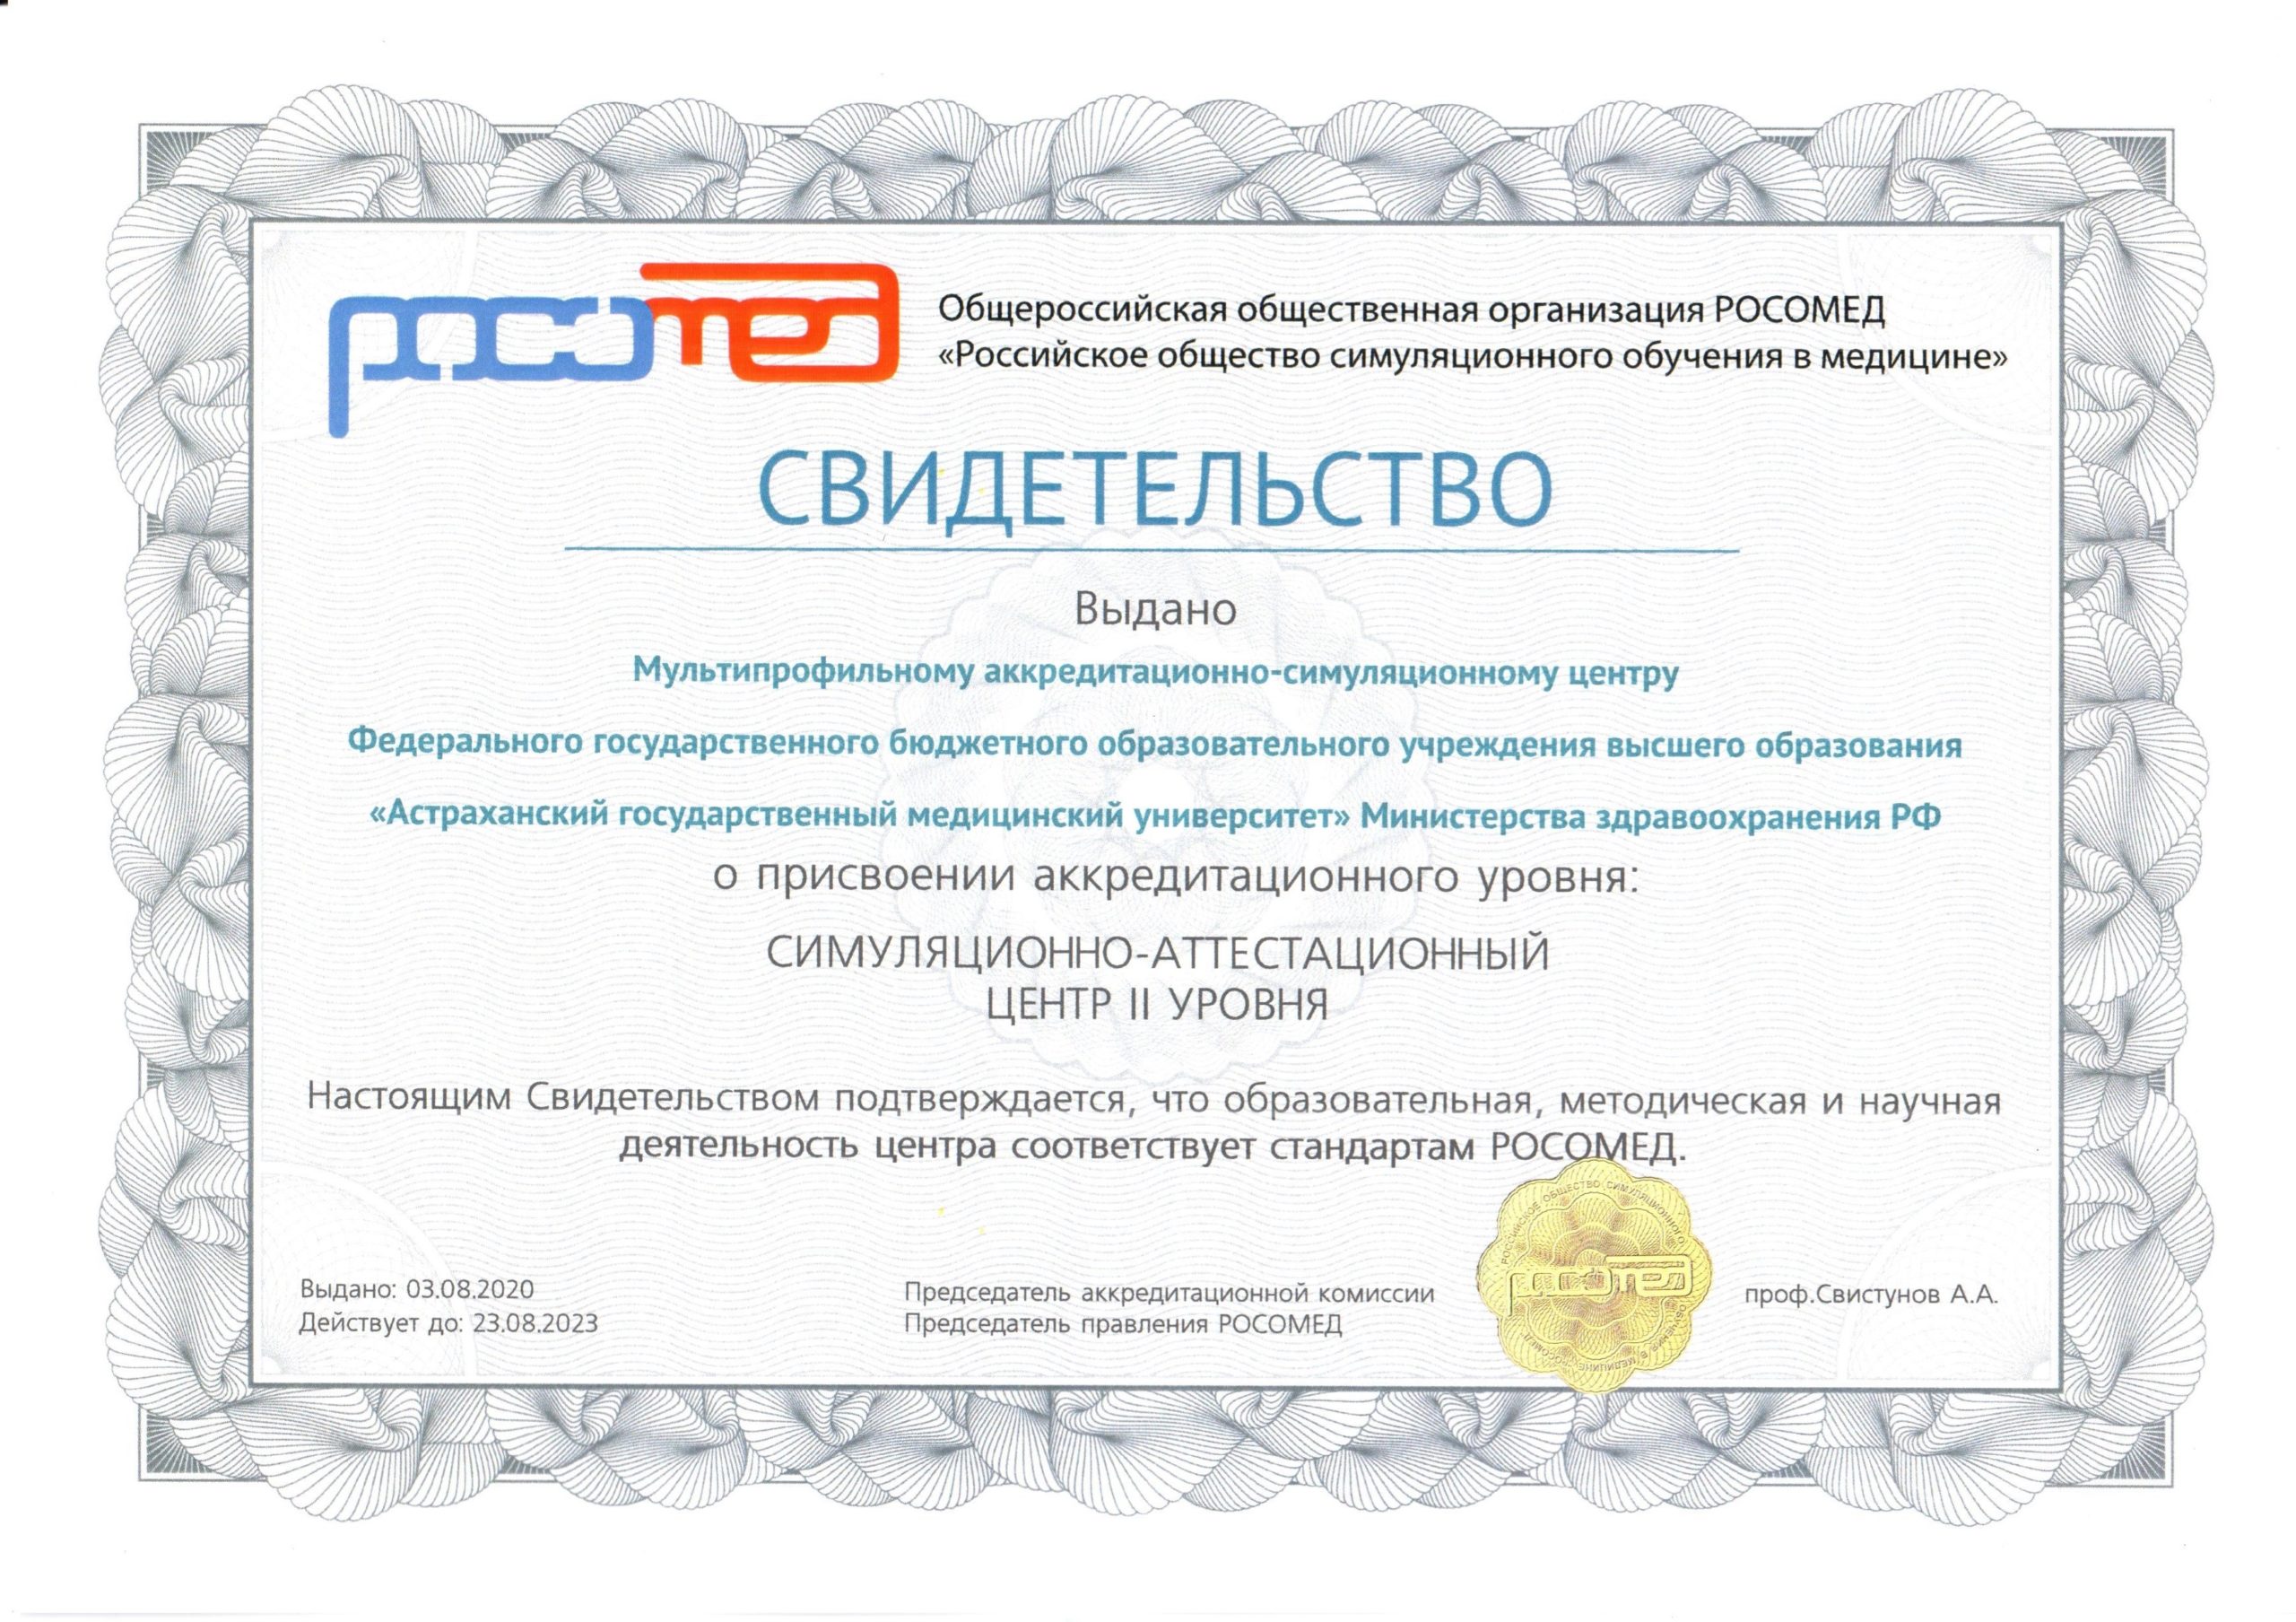 Мультипрофильному аккредитационно-симуляционному центру Астраханского ГМУ присвоен II уровень